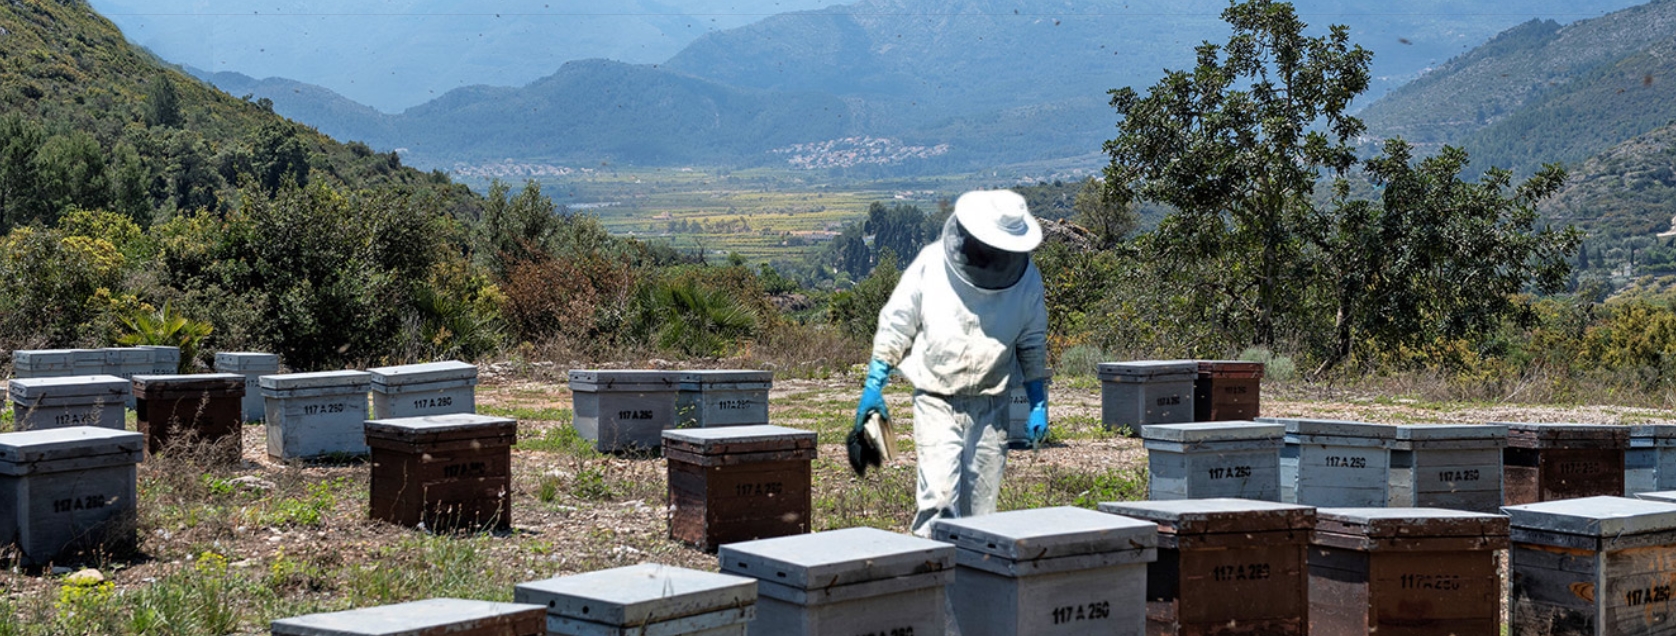 Apiturismo: Descubre el fascinante mundo de las abejas y la apicultura. Una experiencia para los viajeros.